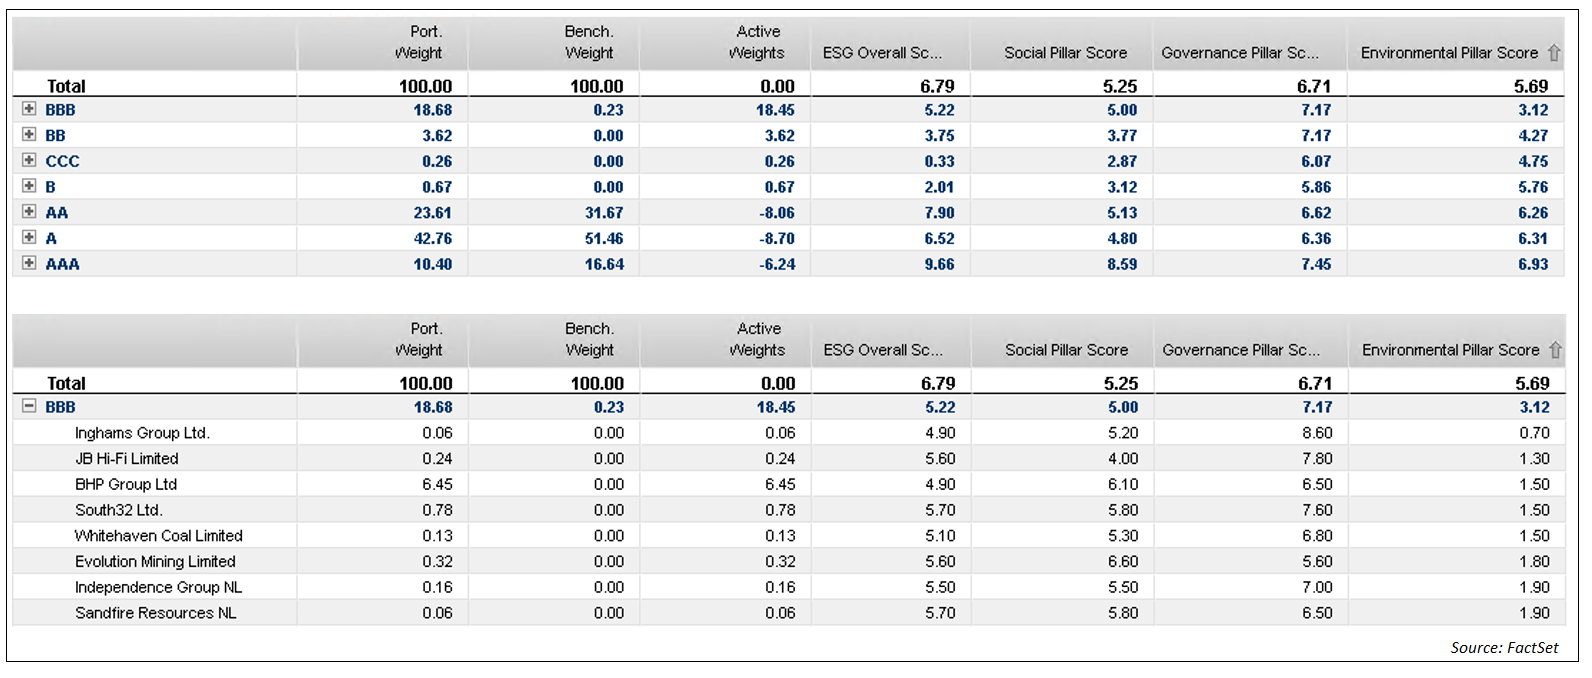 MSCI ESG Overall Rating breakdown